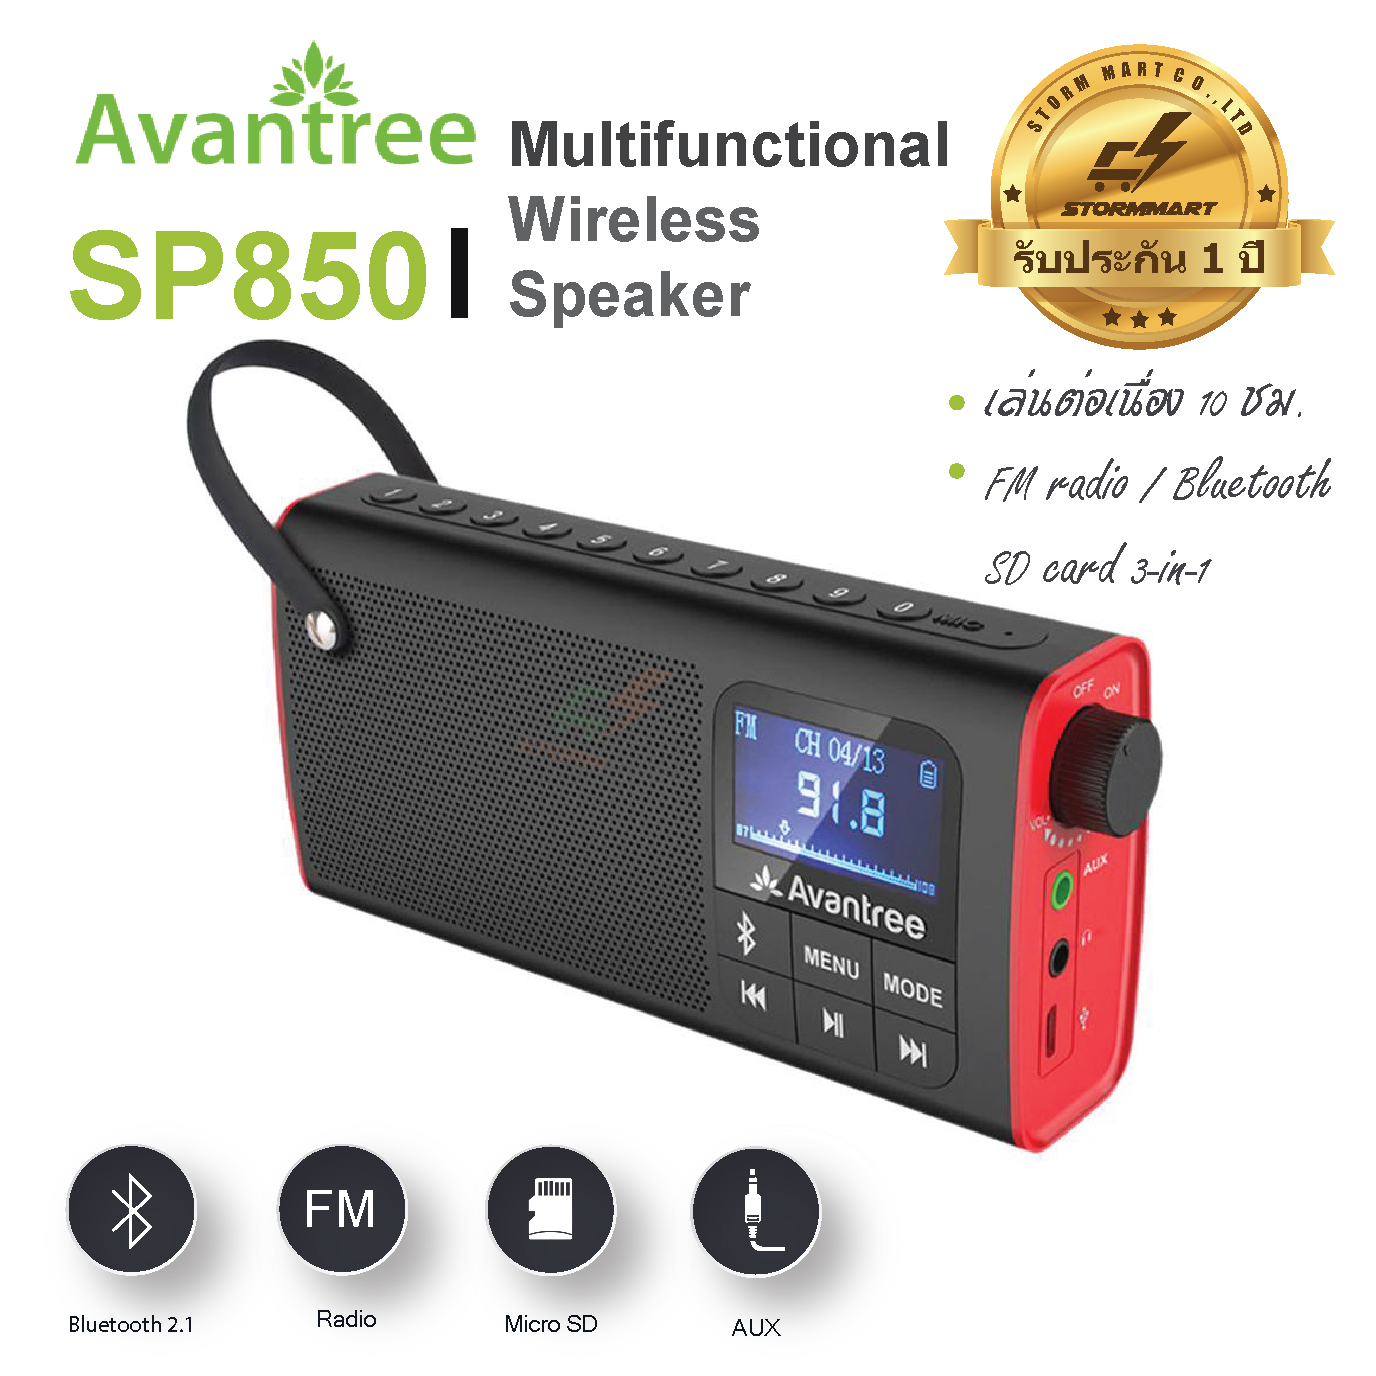 AVANTREE Bluetooth speaker with FM radio, support SD card ลำโพงบลูทูธ พร้อมวิทยุ FM รุ่น SP850 (สีดำ-แดง)